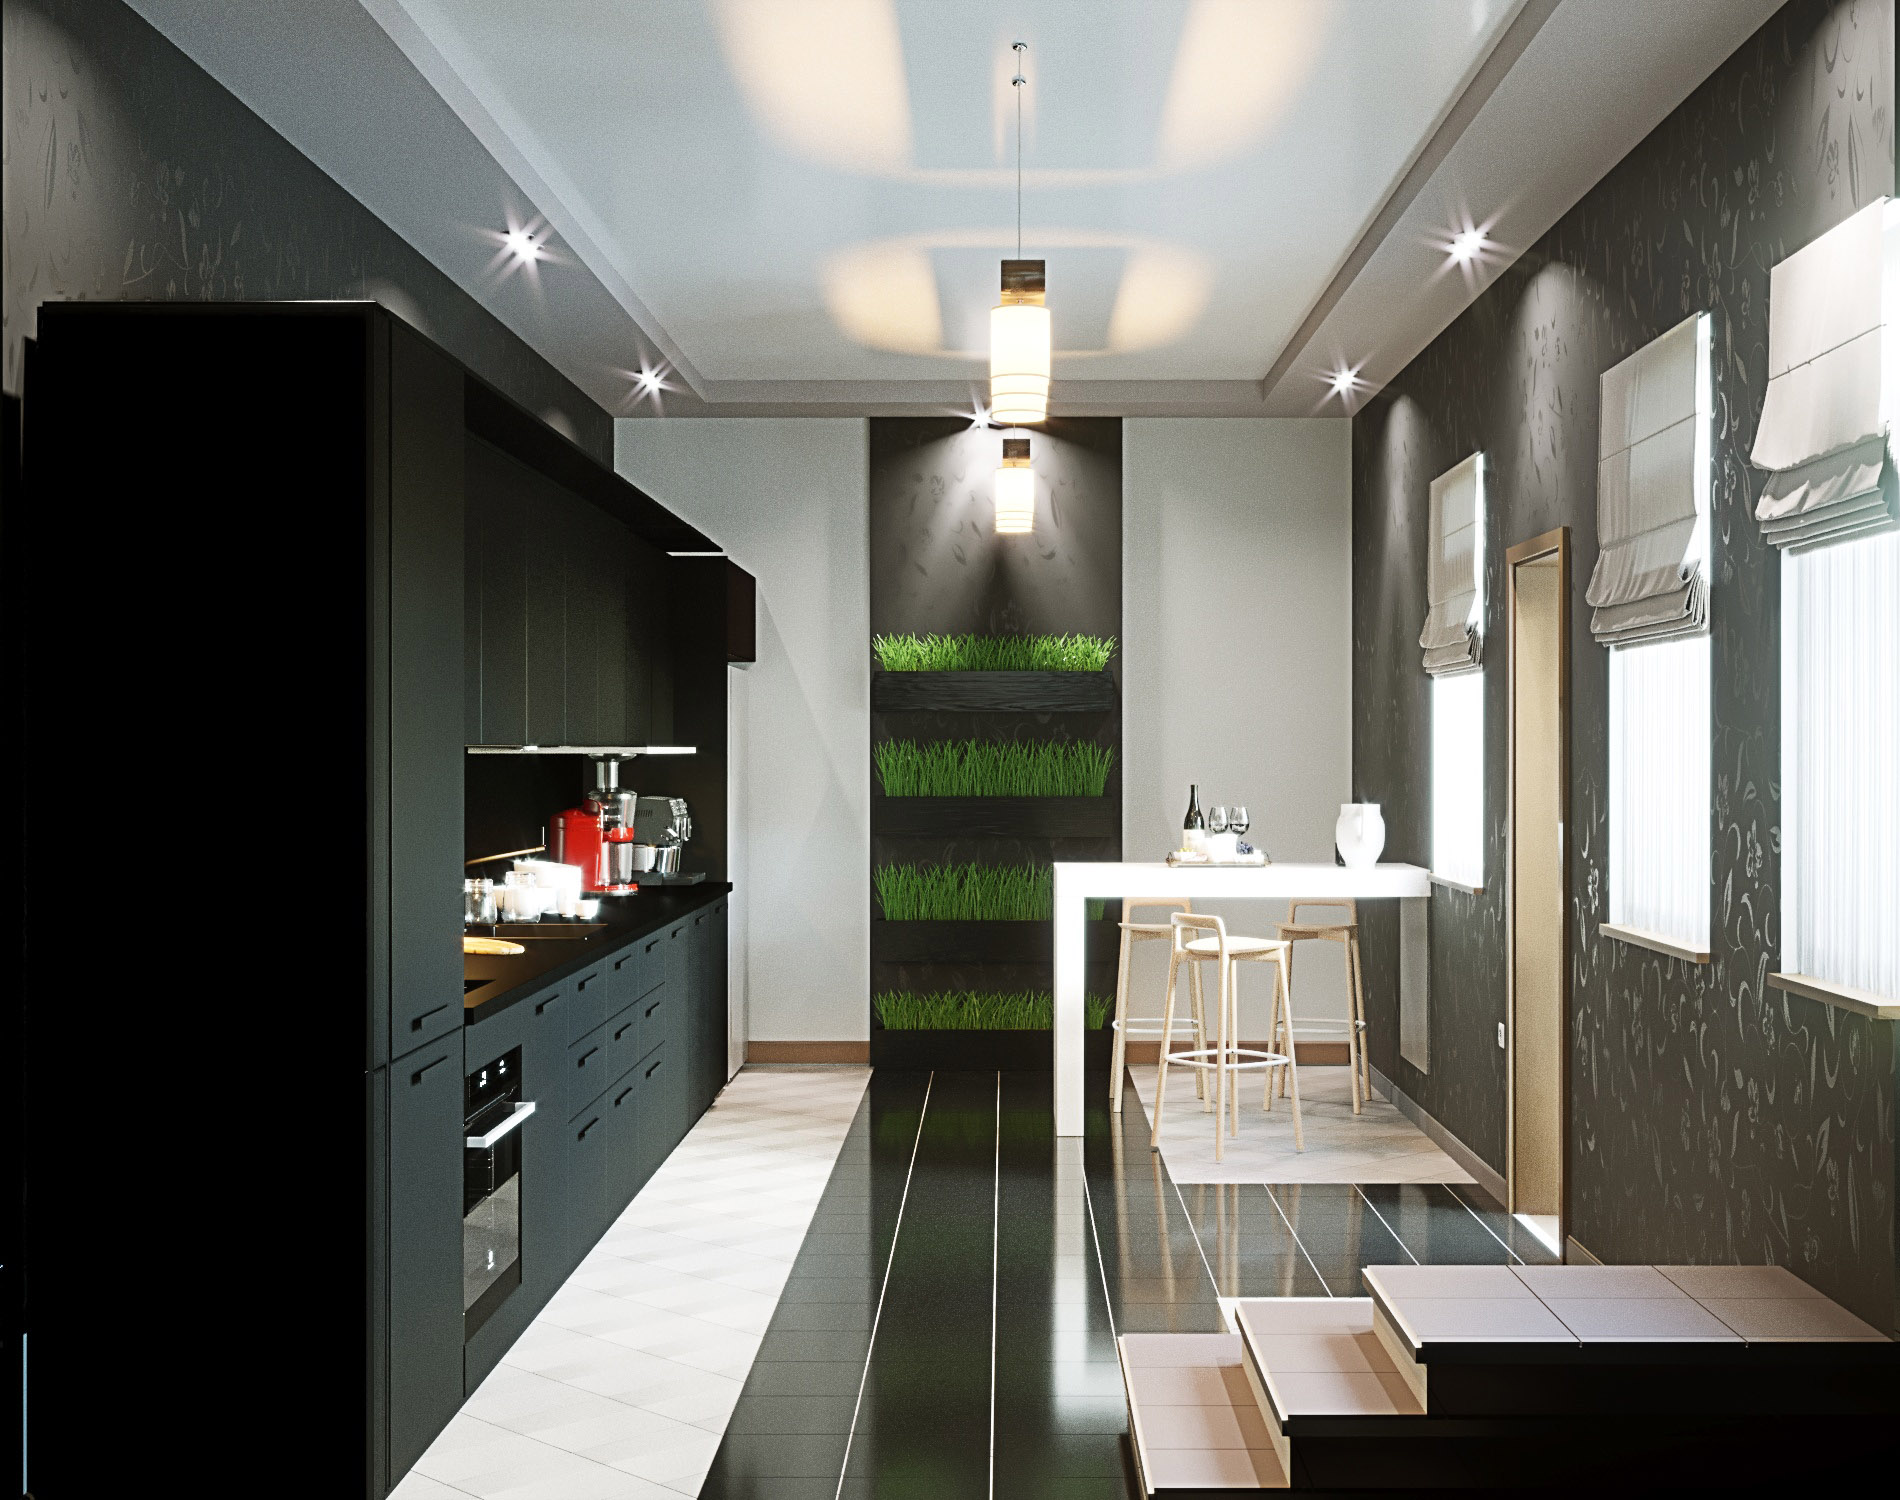 imagen de cocina blanco y negro en ArchiCAD corona render